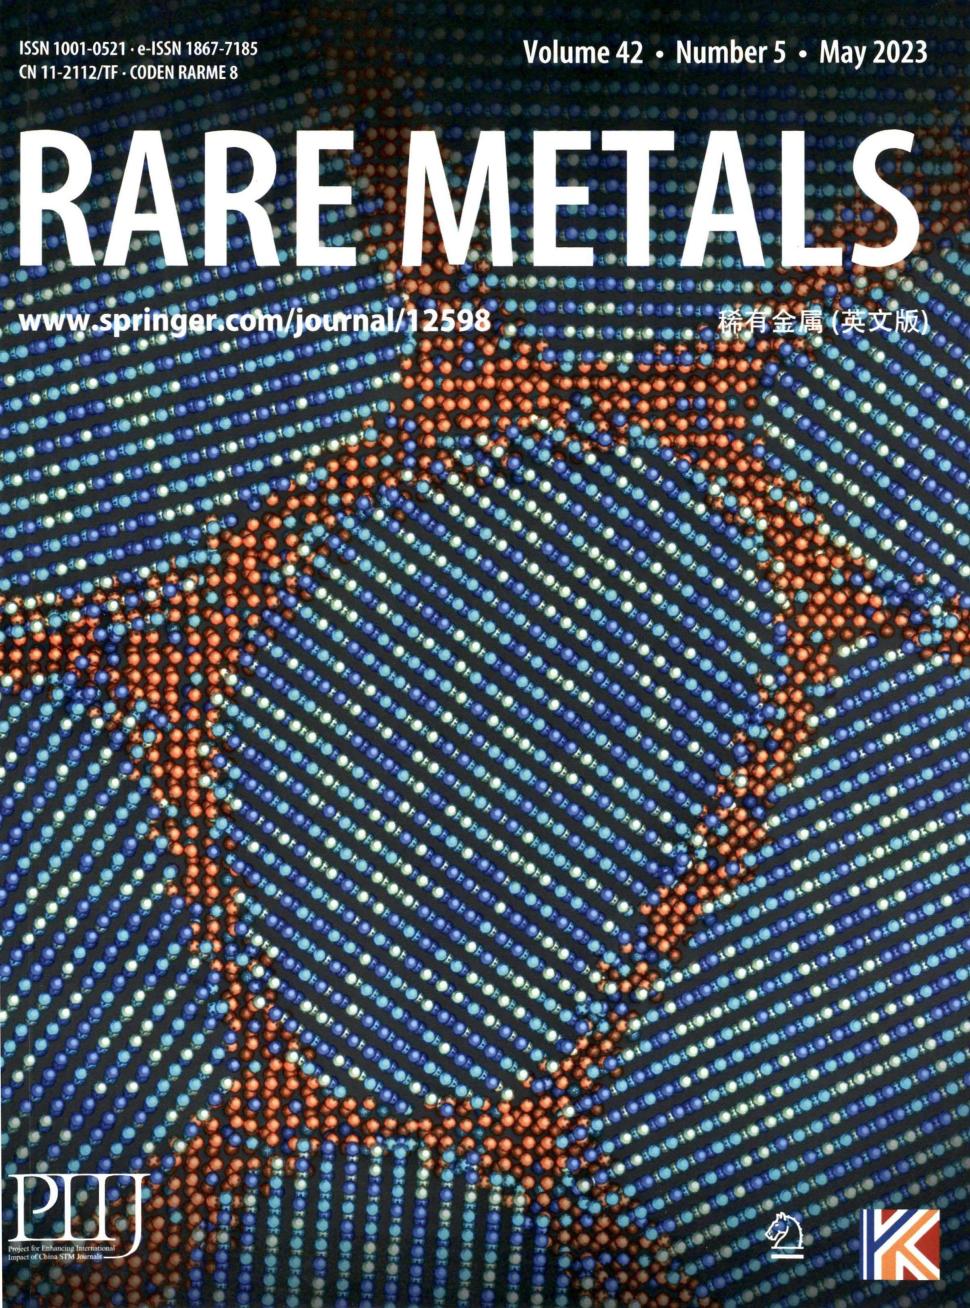 Rare Metals